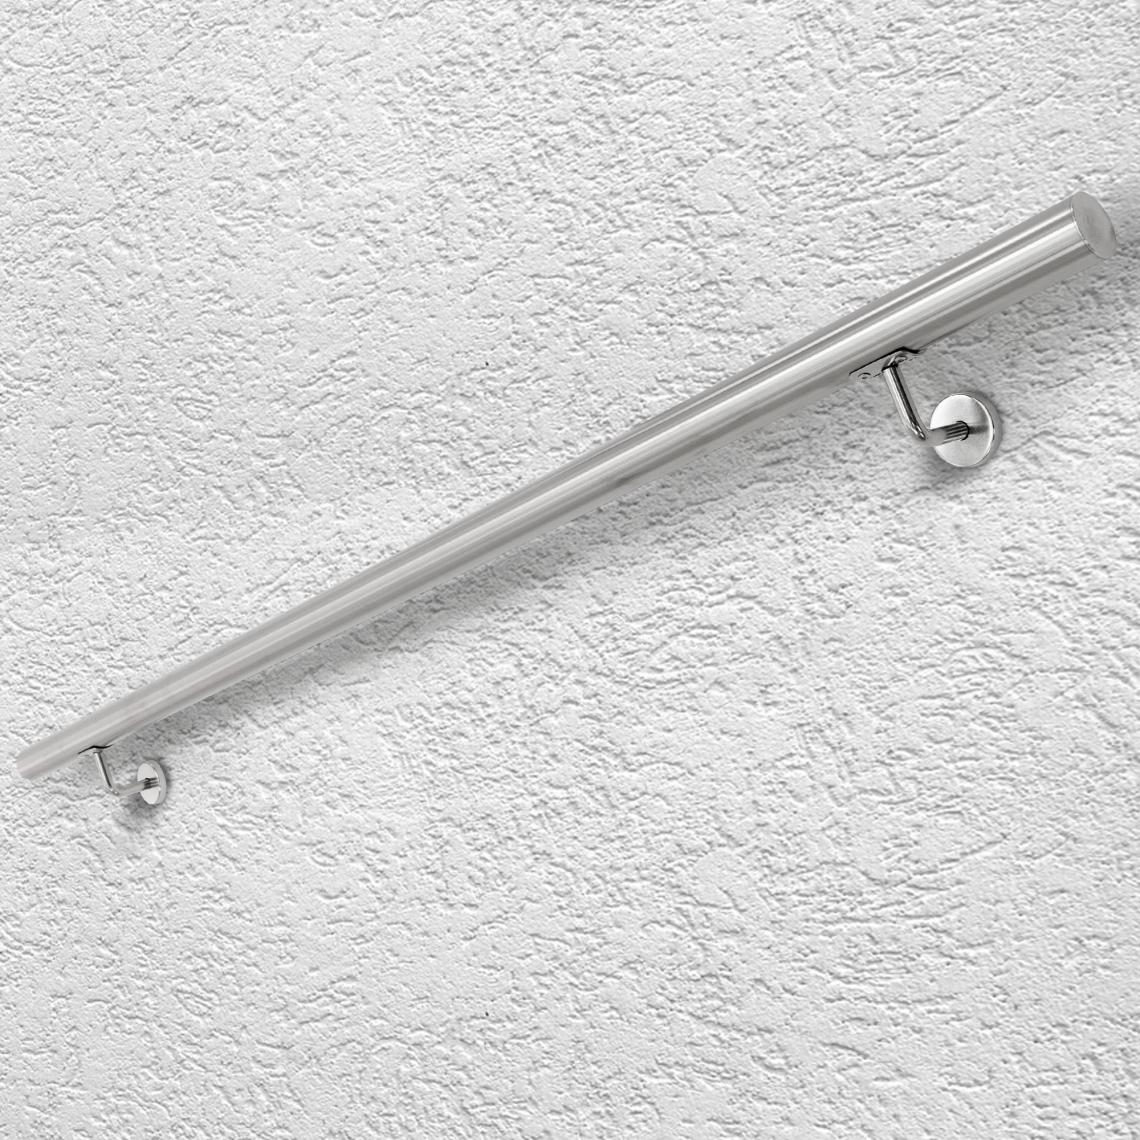 Ecd Germany - Main courante escalier en acier inoxydable rampe barre appui rambarde 160 cm - Escalier escamotable